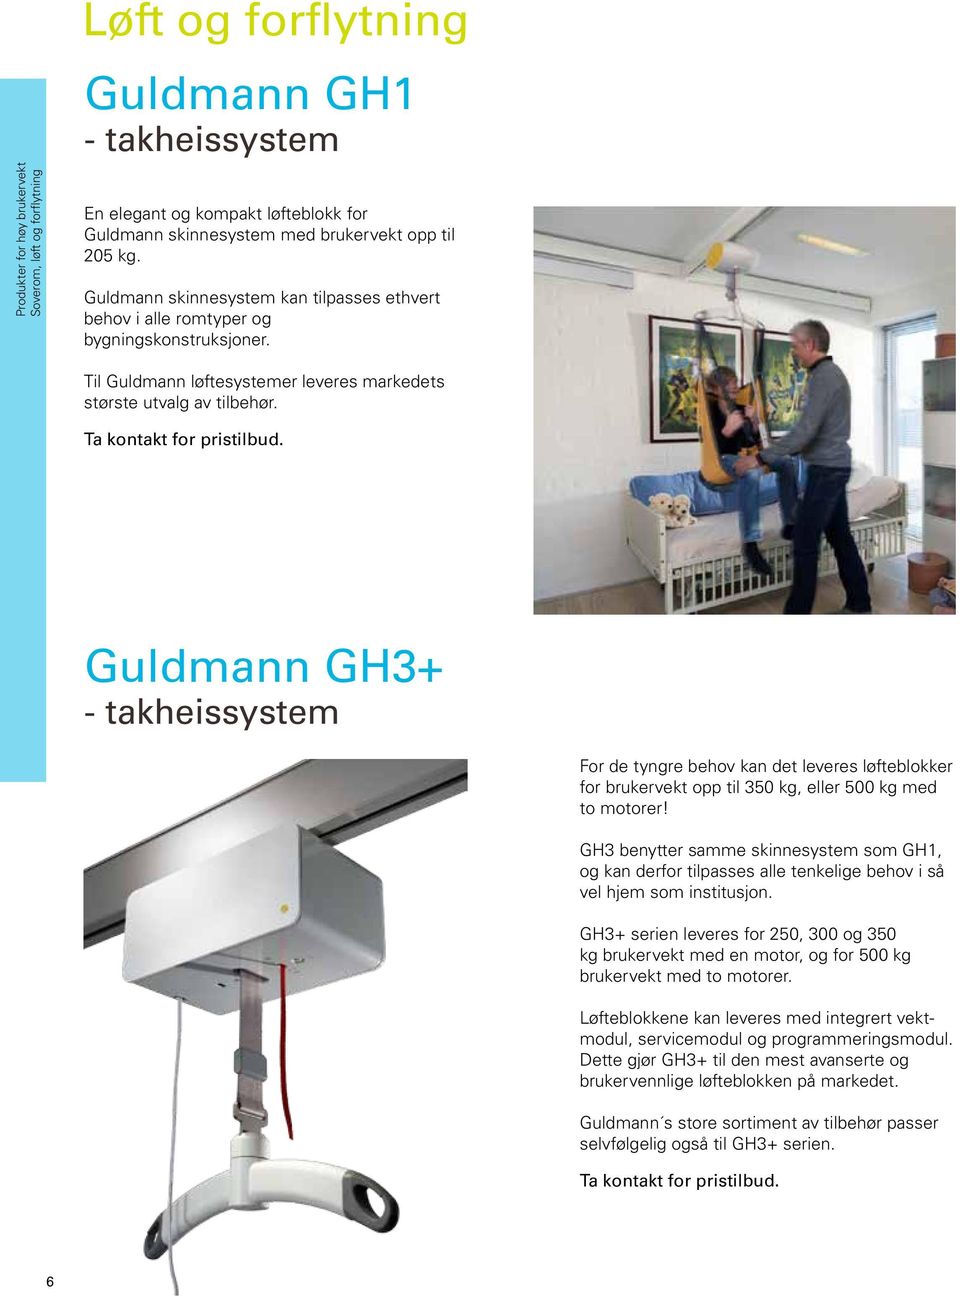 Guldmann GH3+ - takheissystem For de tyngre behov kan det leveres løfteblokker for brukervekt opp til 350 kg, eller 500 kg med to motorer!